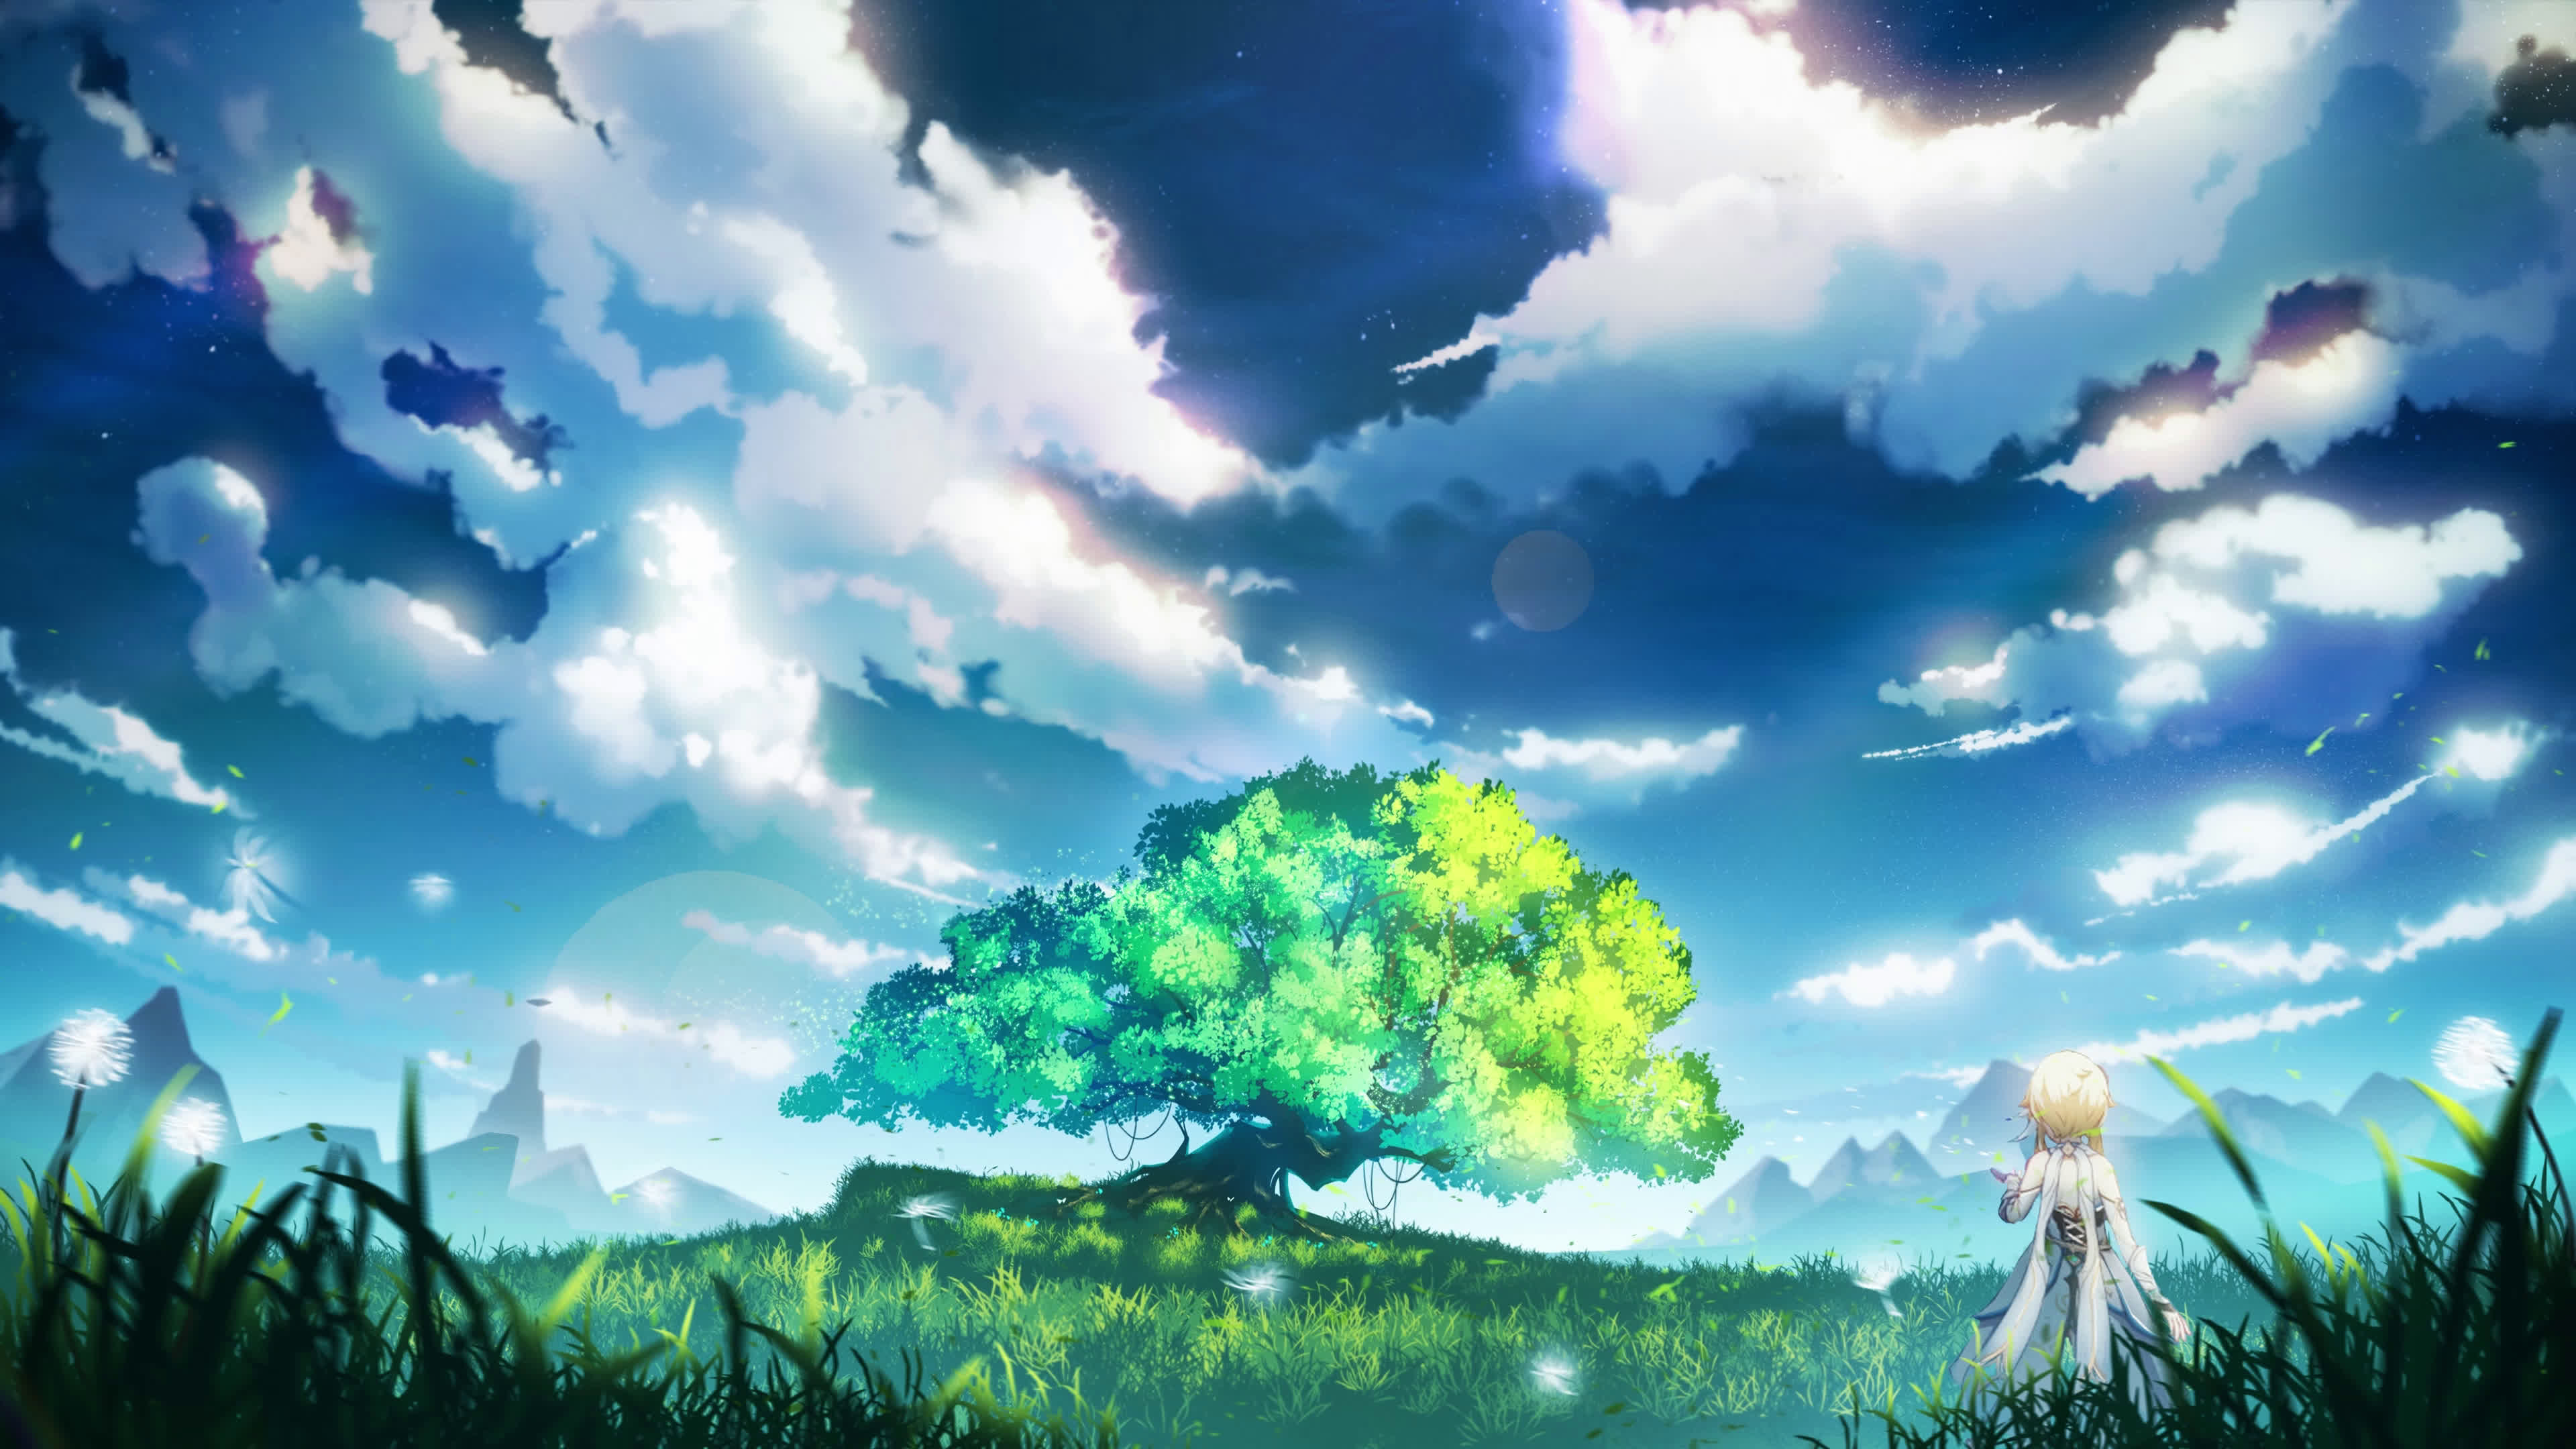 Trò chơi MMO Genshin Impact khiến cho người chơi cảm thấy như mình đang mơ mộng trong một thế giới thần tiên đầy phép thuật. Những hình ảnh đẹp và tuyệt vời trong trò chơi này sẽ khiến cho bạn thích thú và muốn khám phá ngay tất cả những gì mà nó mang lại.